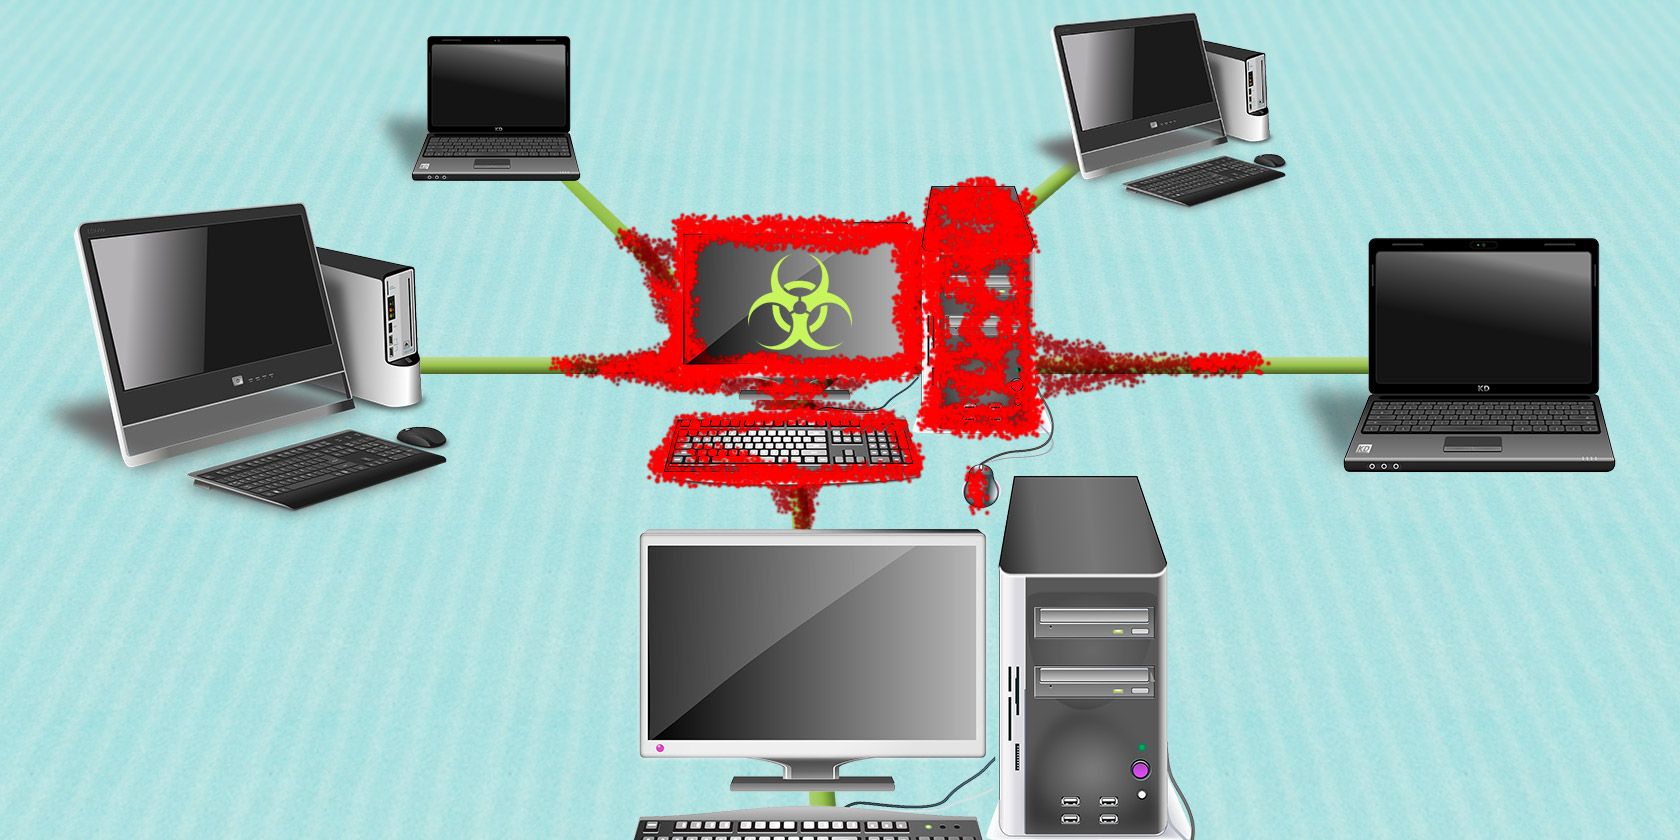 virus spreading between computers